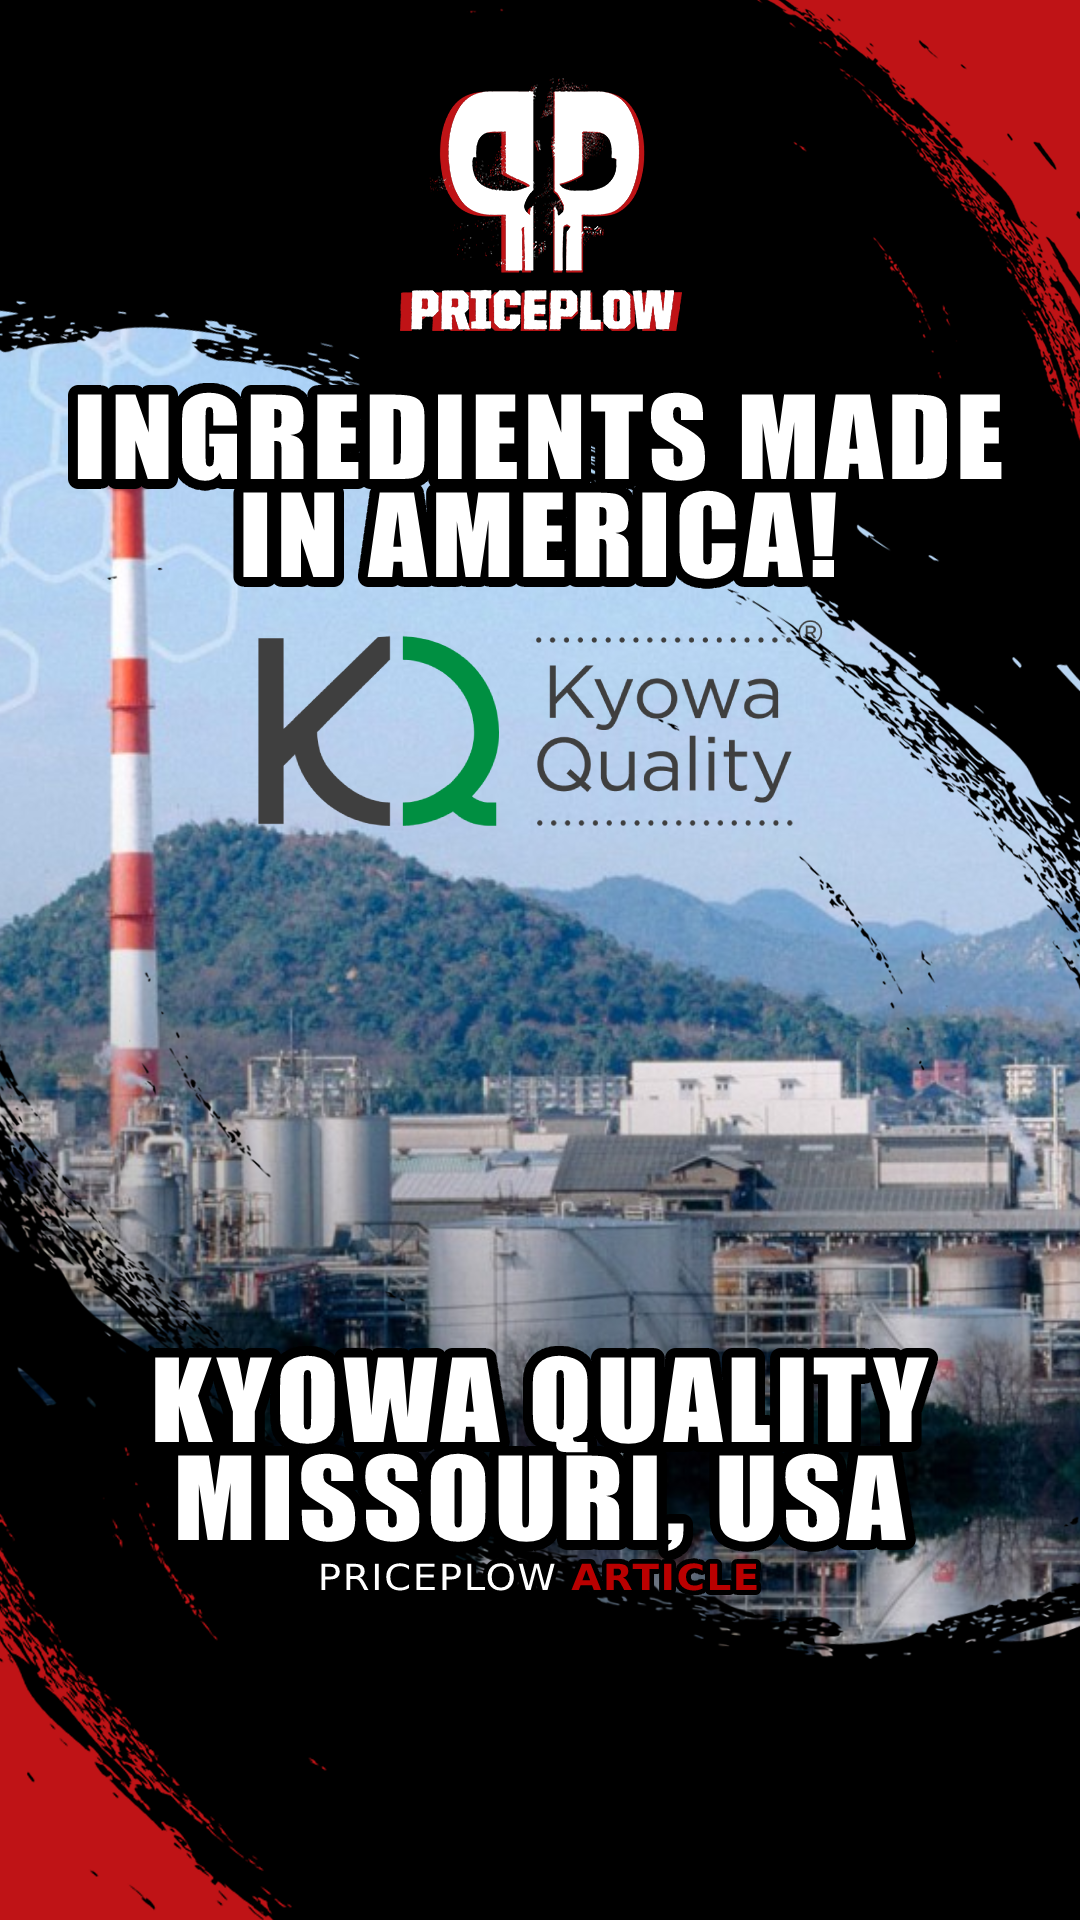 BioKyowa: Kyowa USA Dietary Supplement Ingredients Made in the USA!